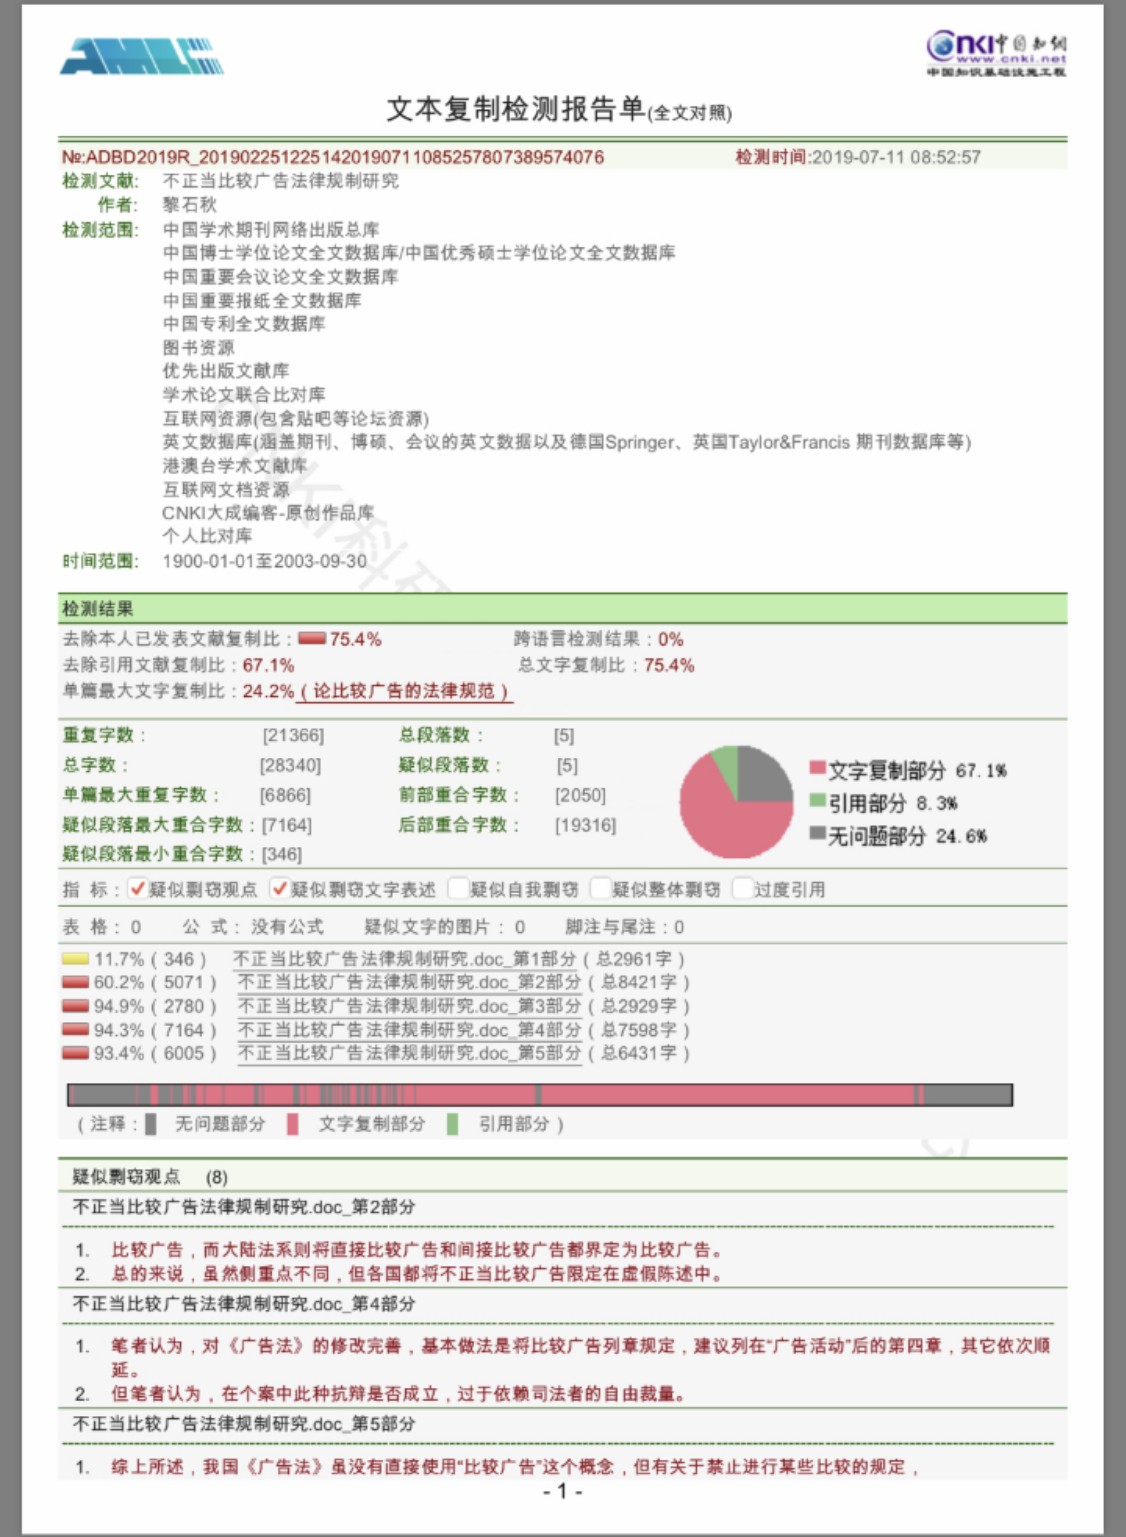 吴丹红公布在微博的材料显示，黎石秋硕士论文存在抄袭行为。微博截图